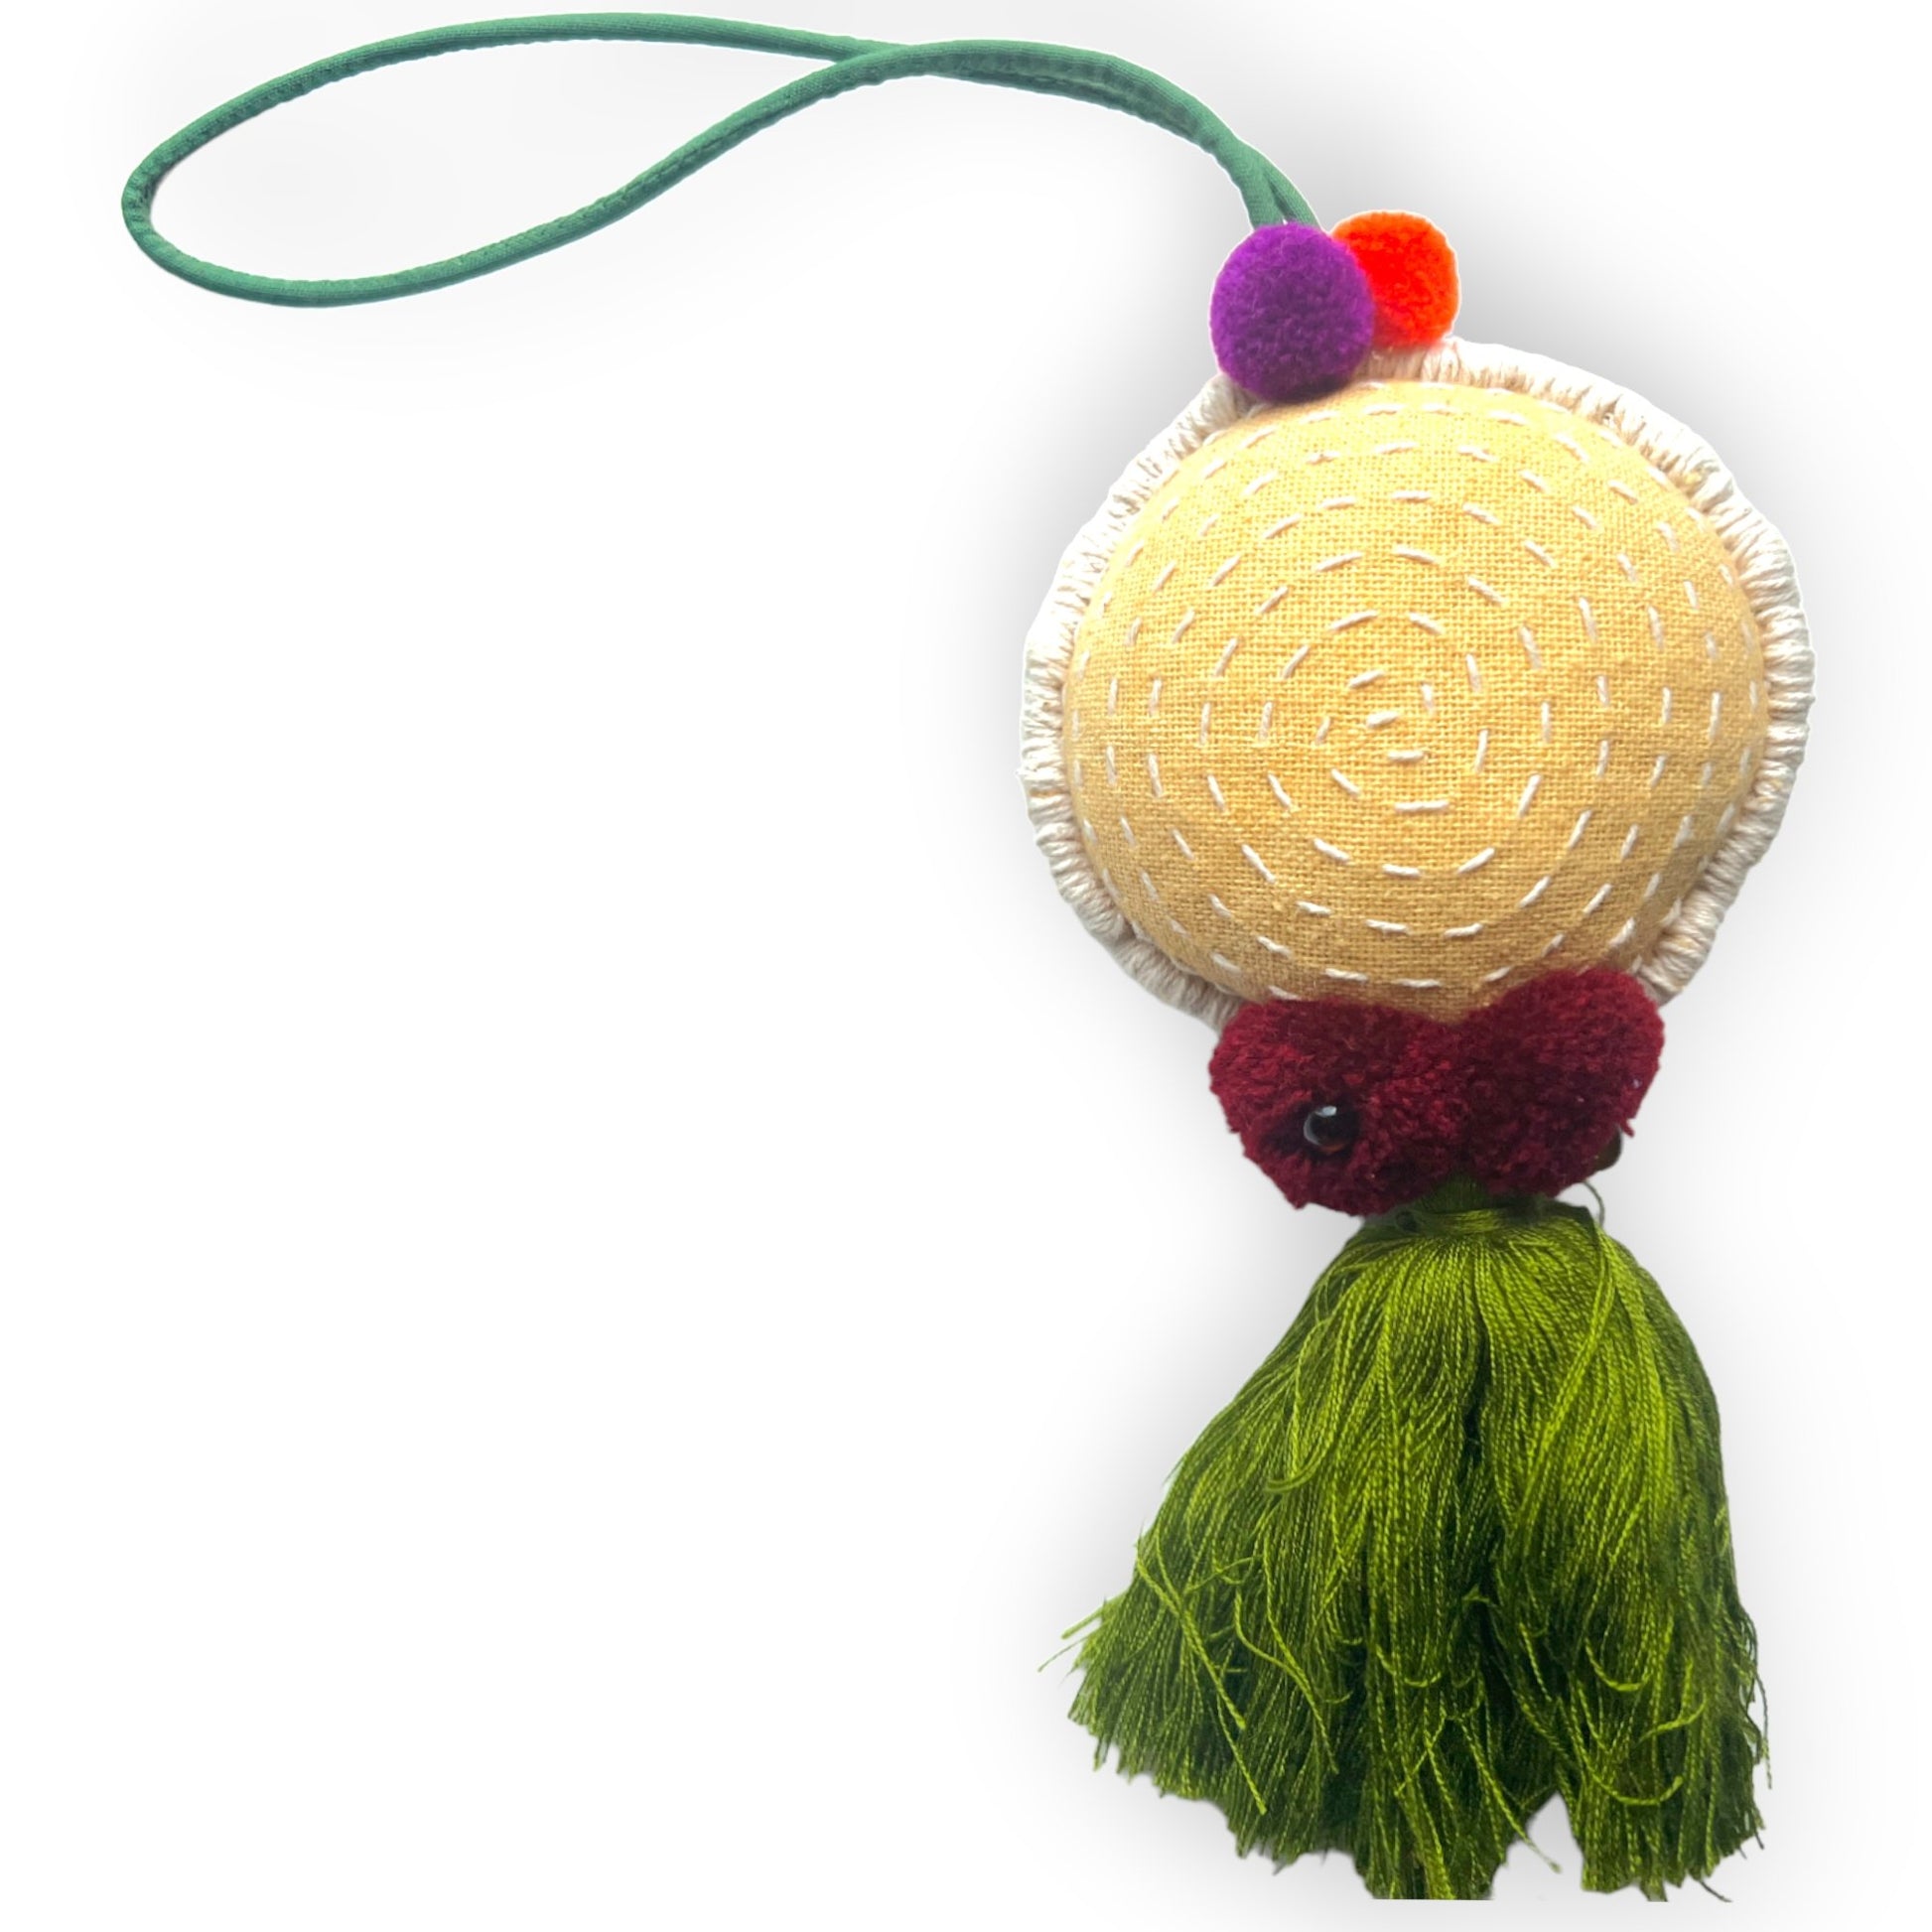 Colorful handcrafted fabric purse or door ornamentSundara Joon